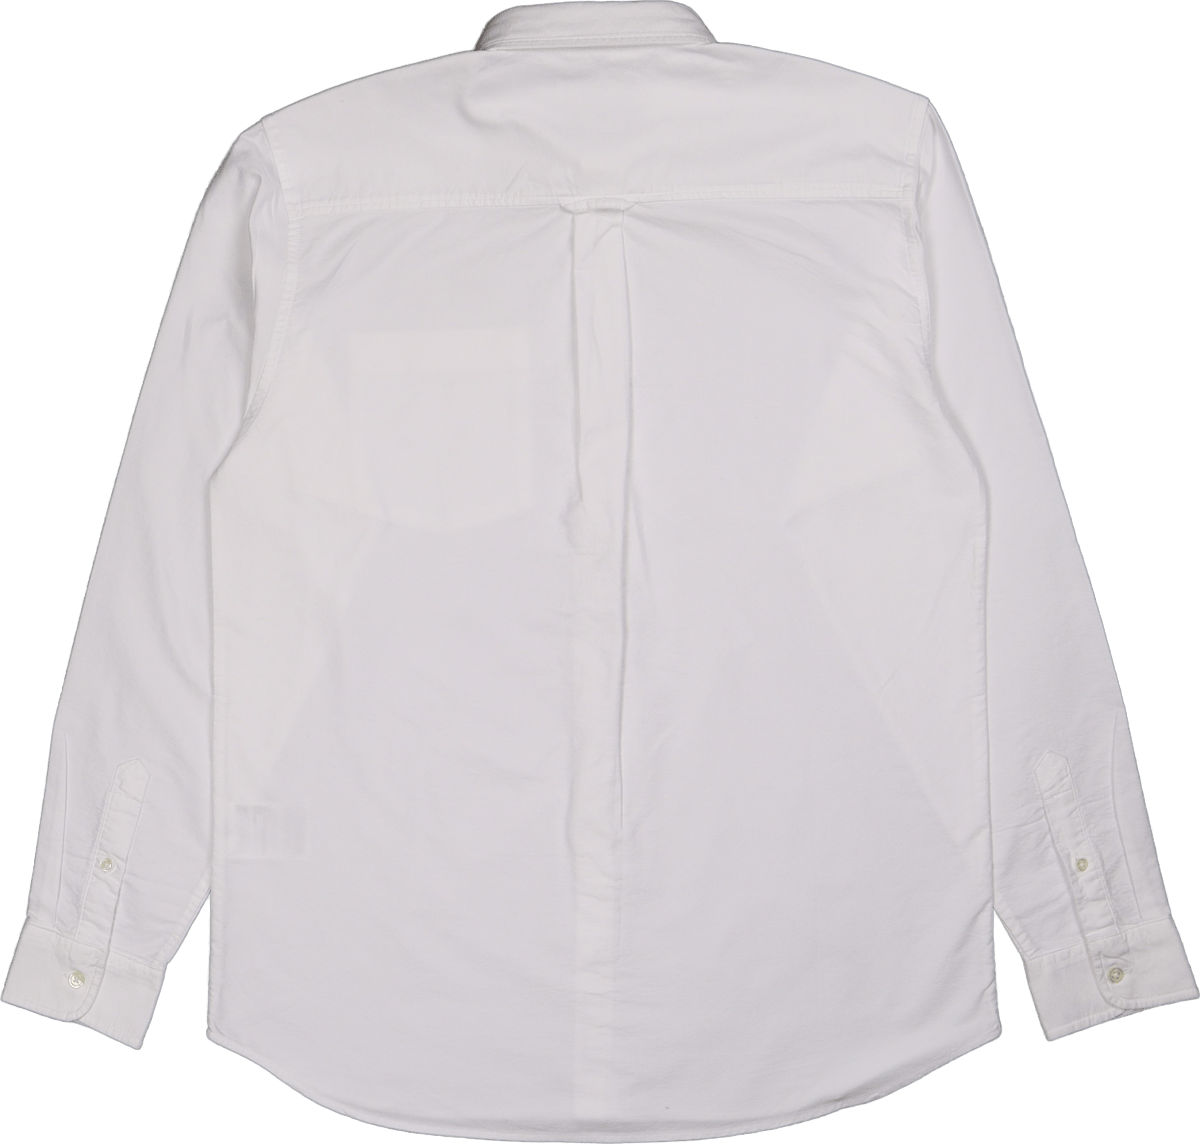 L/s C-logo Shirt White / White